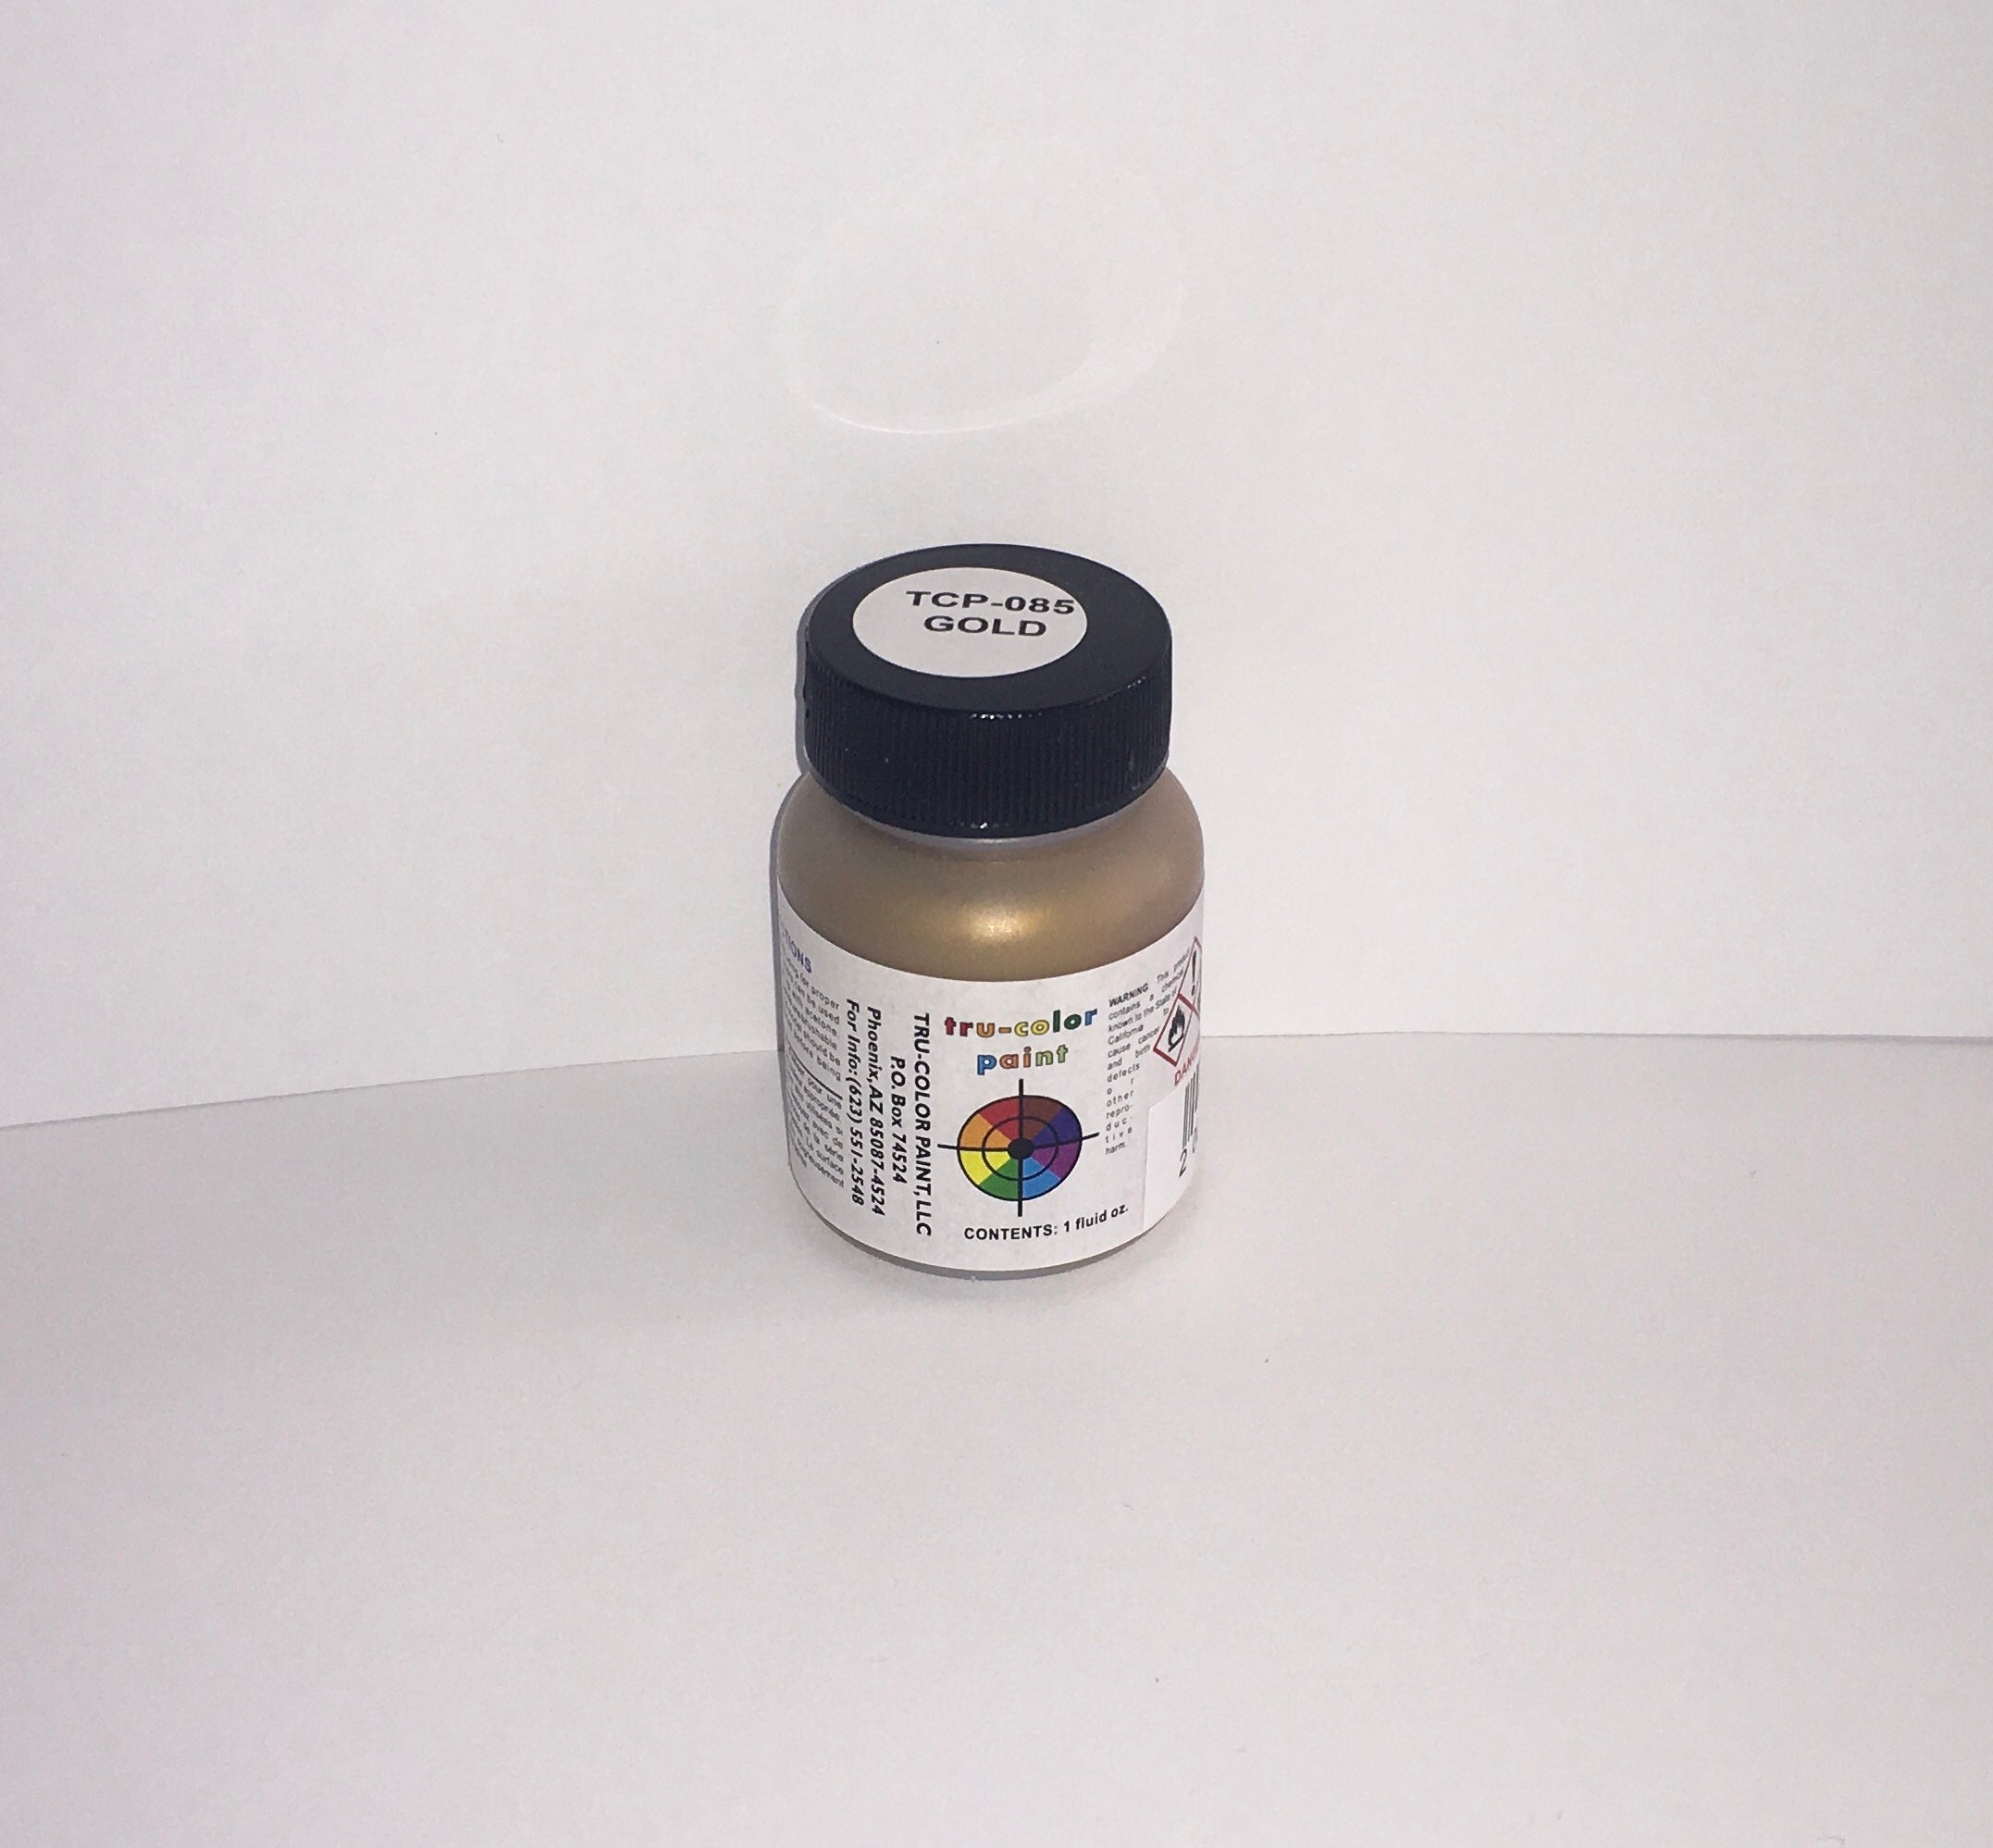 Tru-Color Paint - TCP-085 - Gold (Solvent-Based Paint)